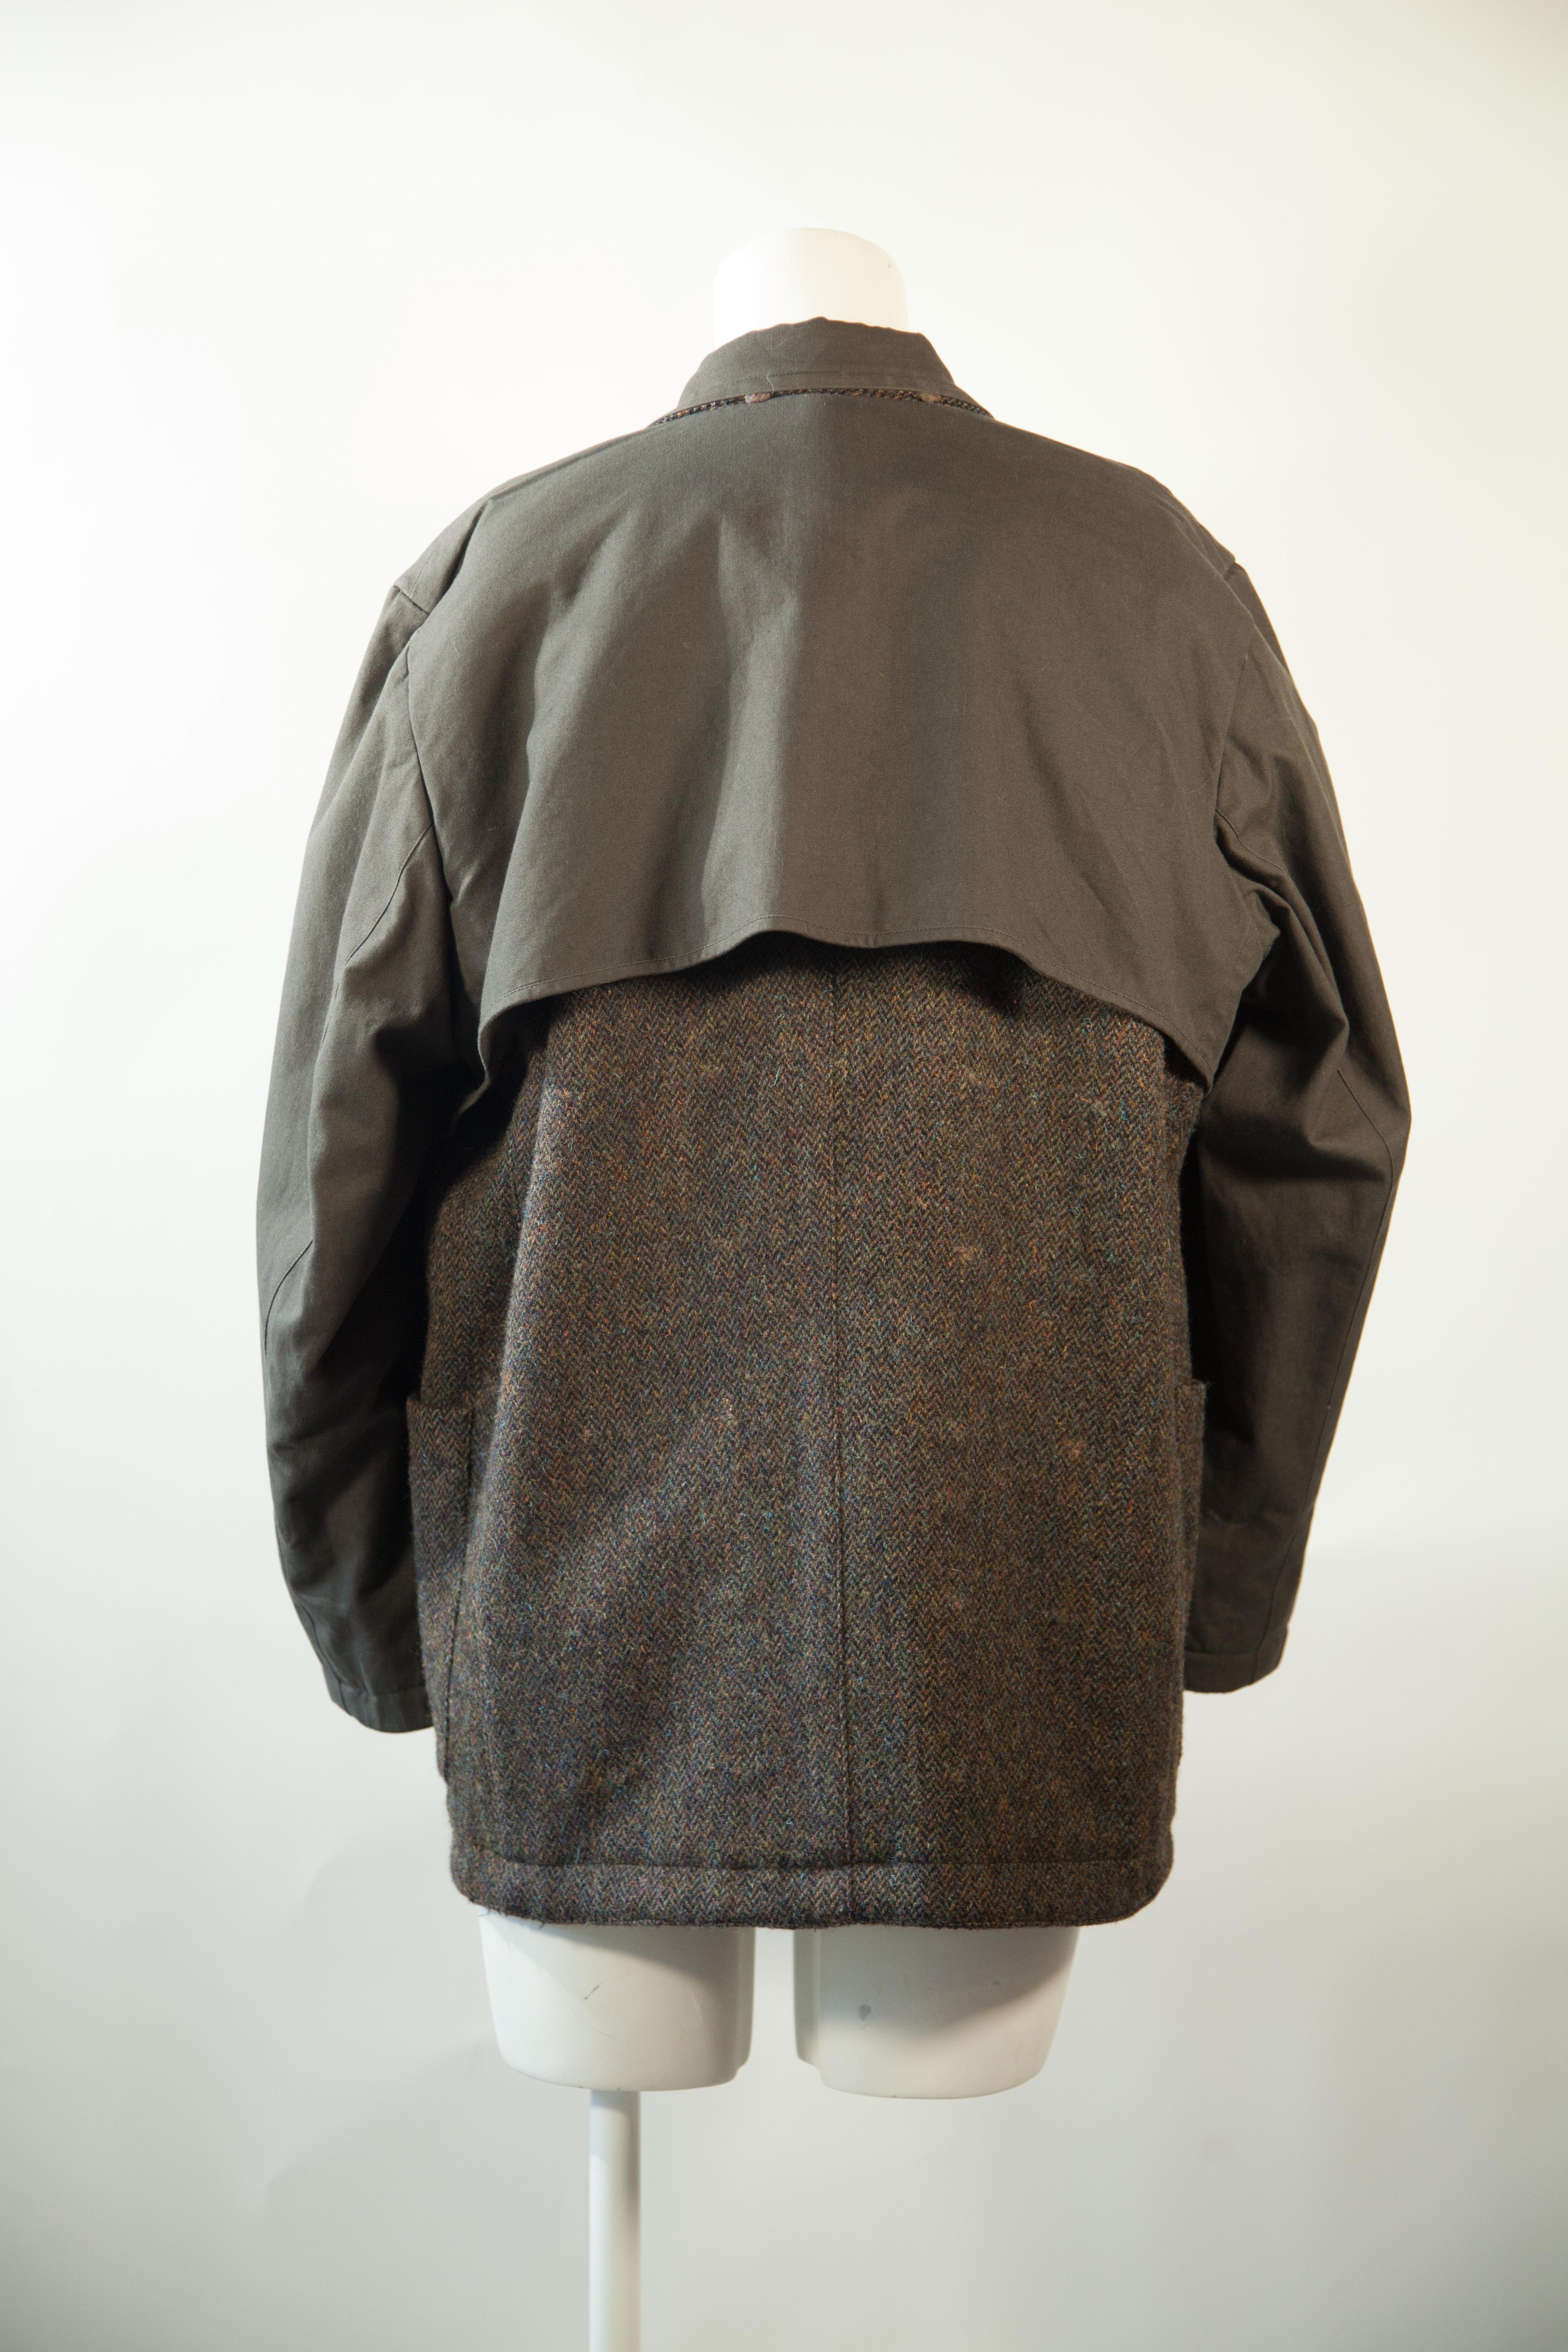 Issey Miyake, Rare, Reversible, Wool, Tweed Jacket, 1970s For Sale 4